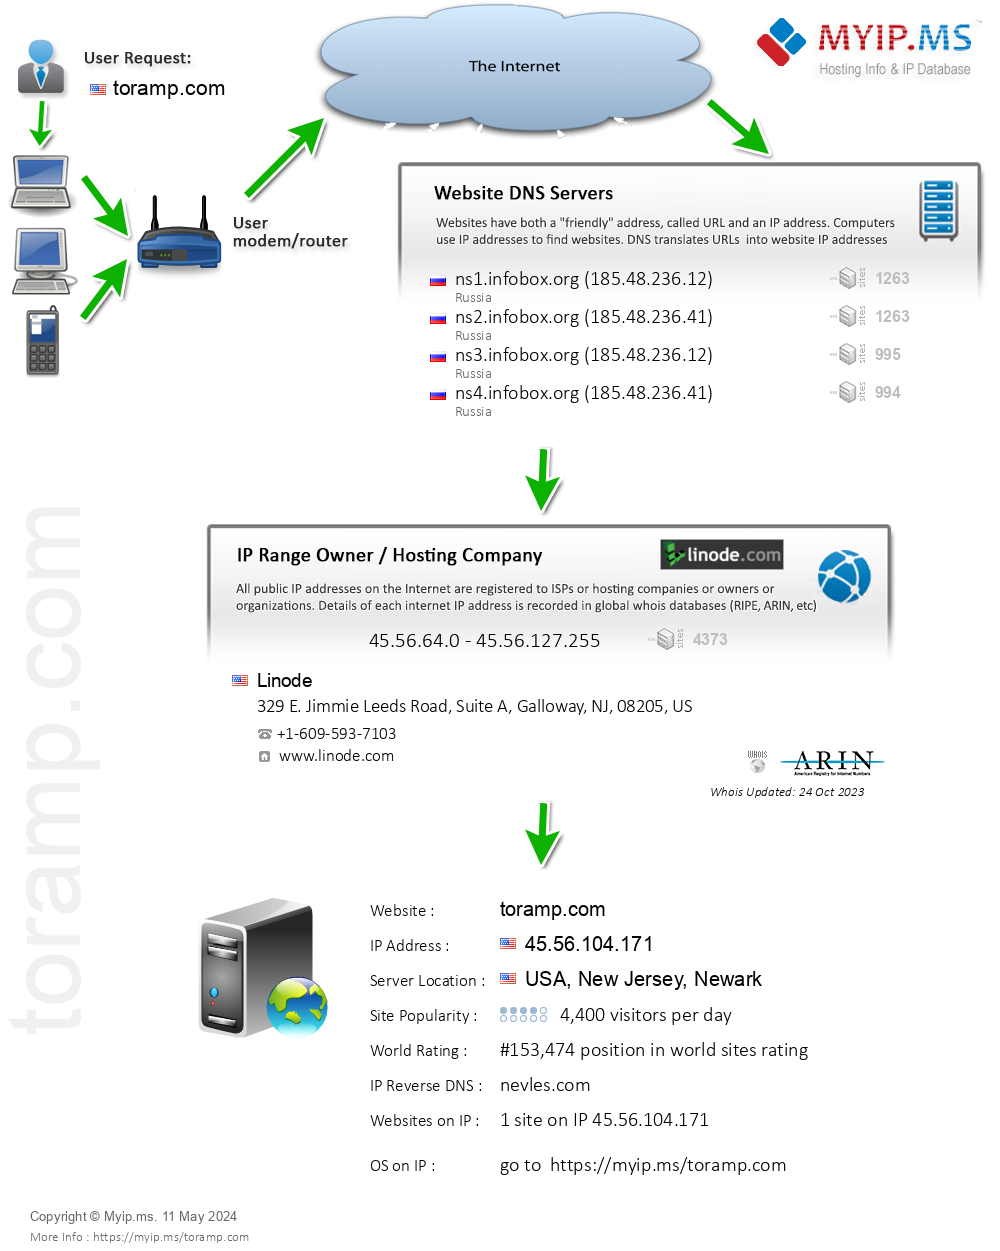 Toramp.com - Website Hosting Visual IP Diagram